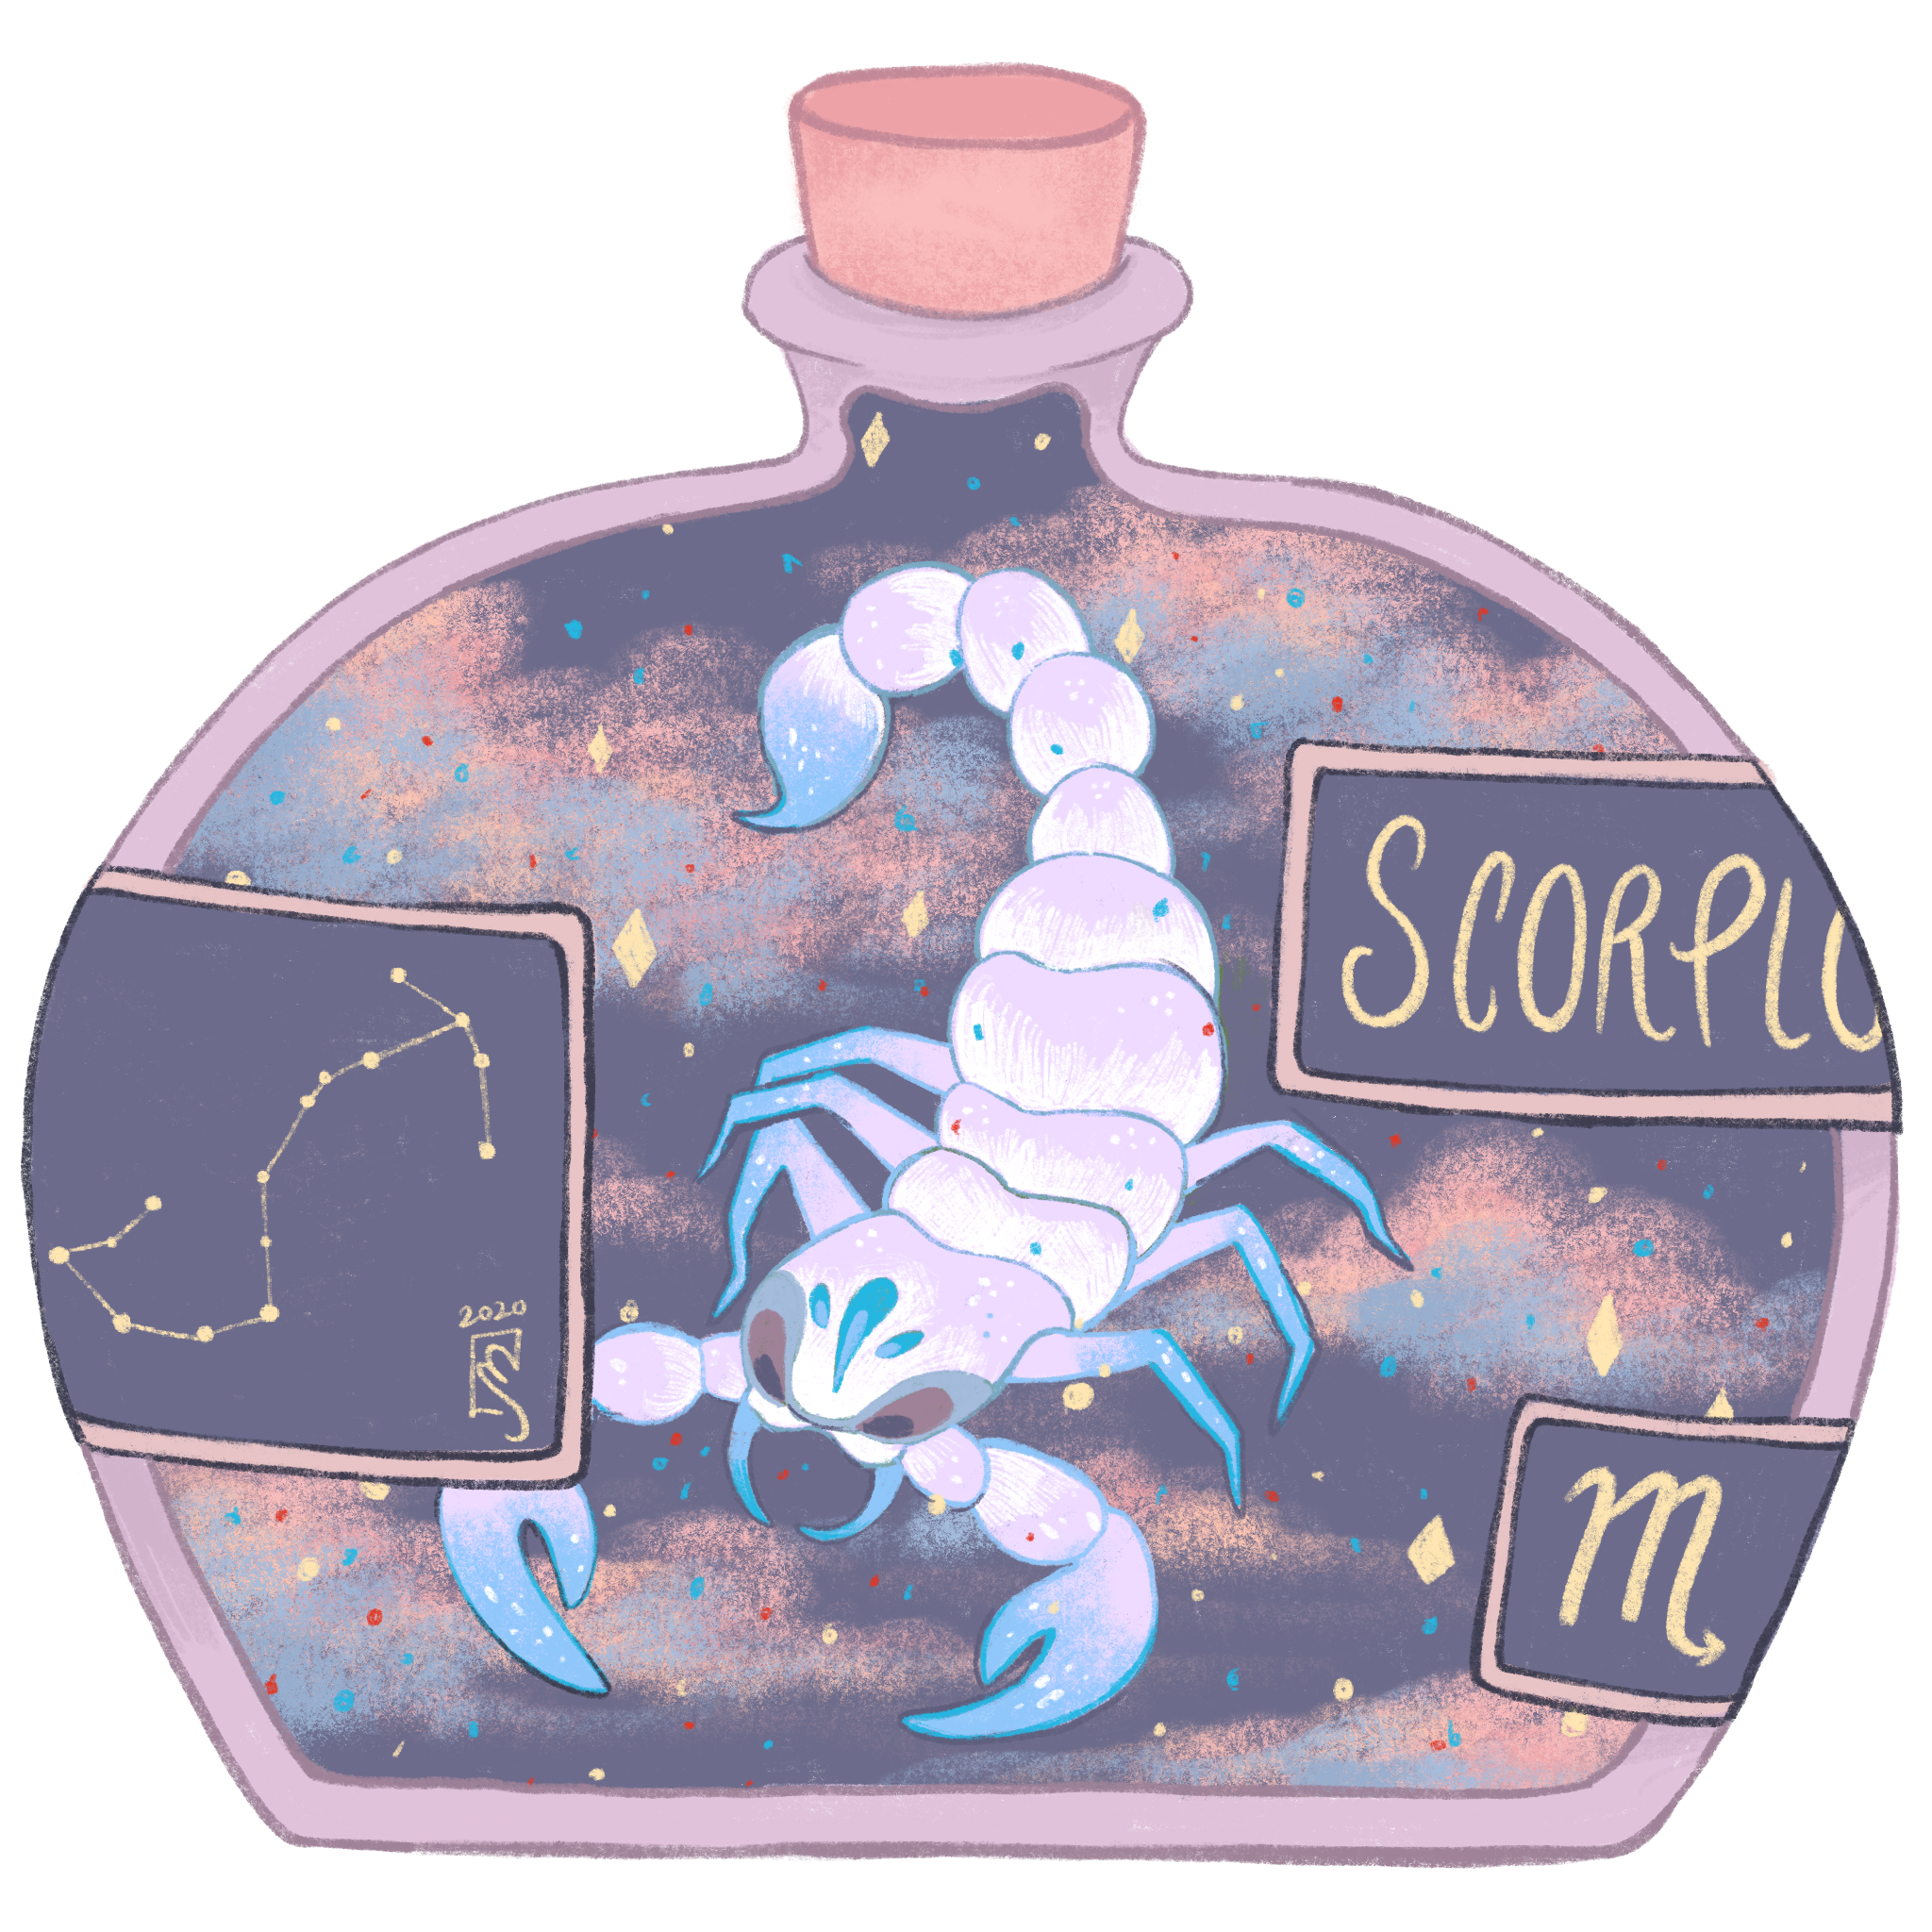 Scorpio (2020)